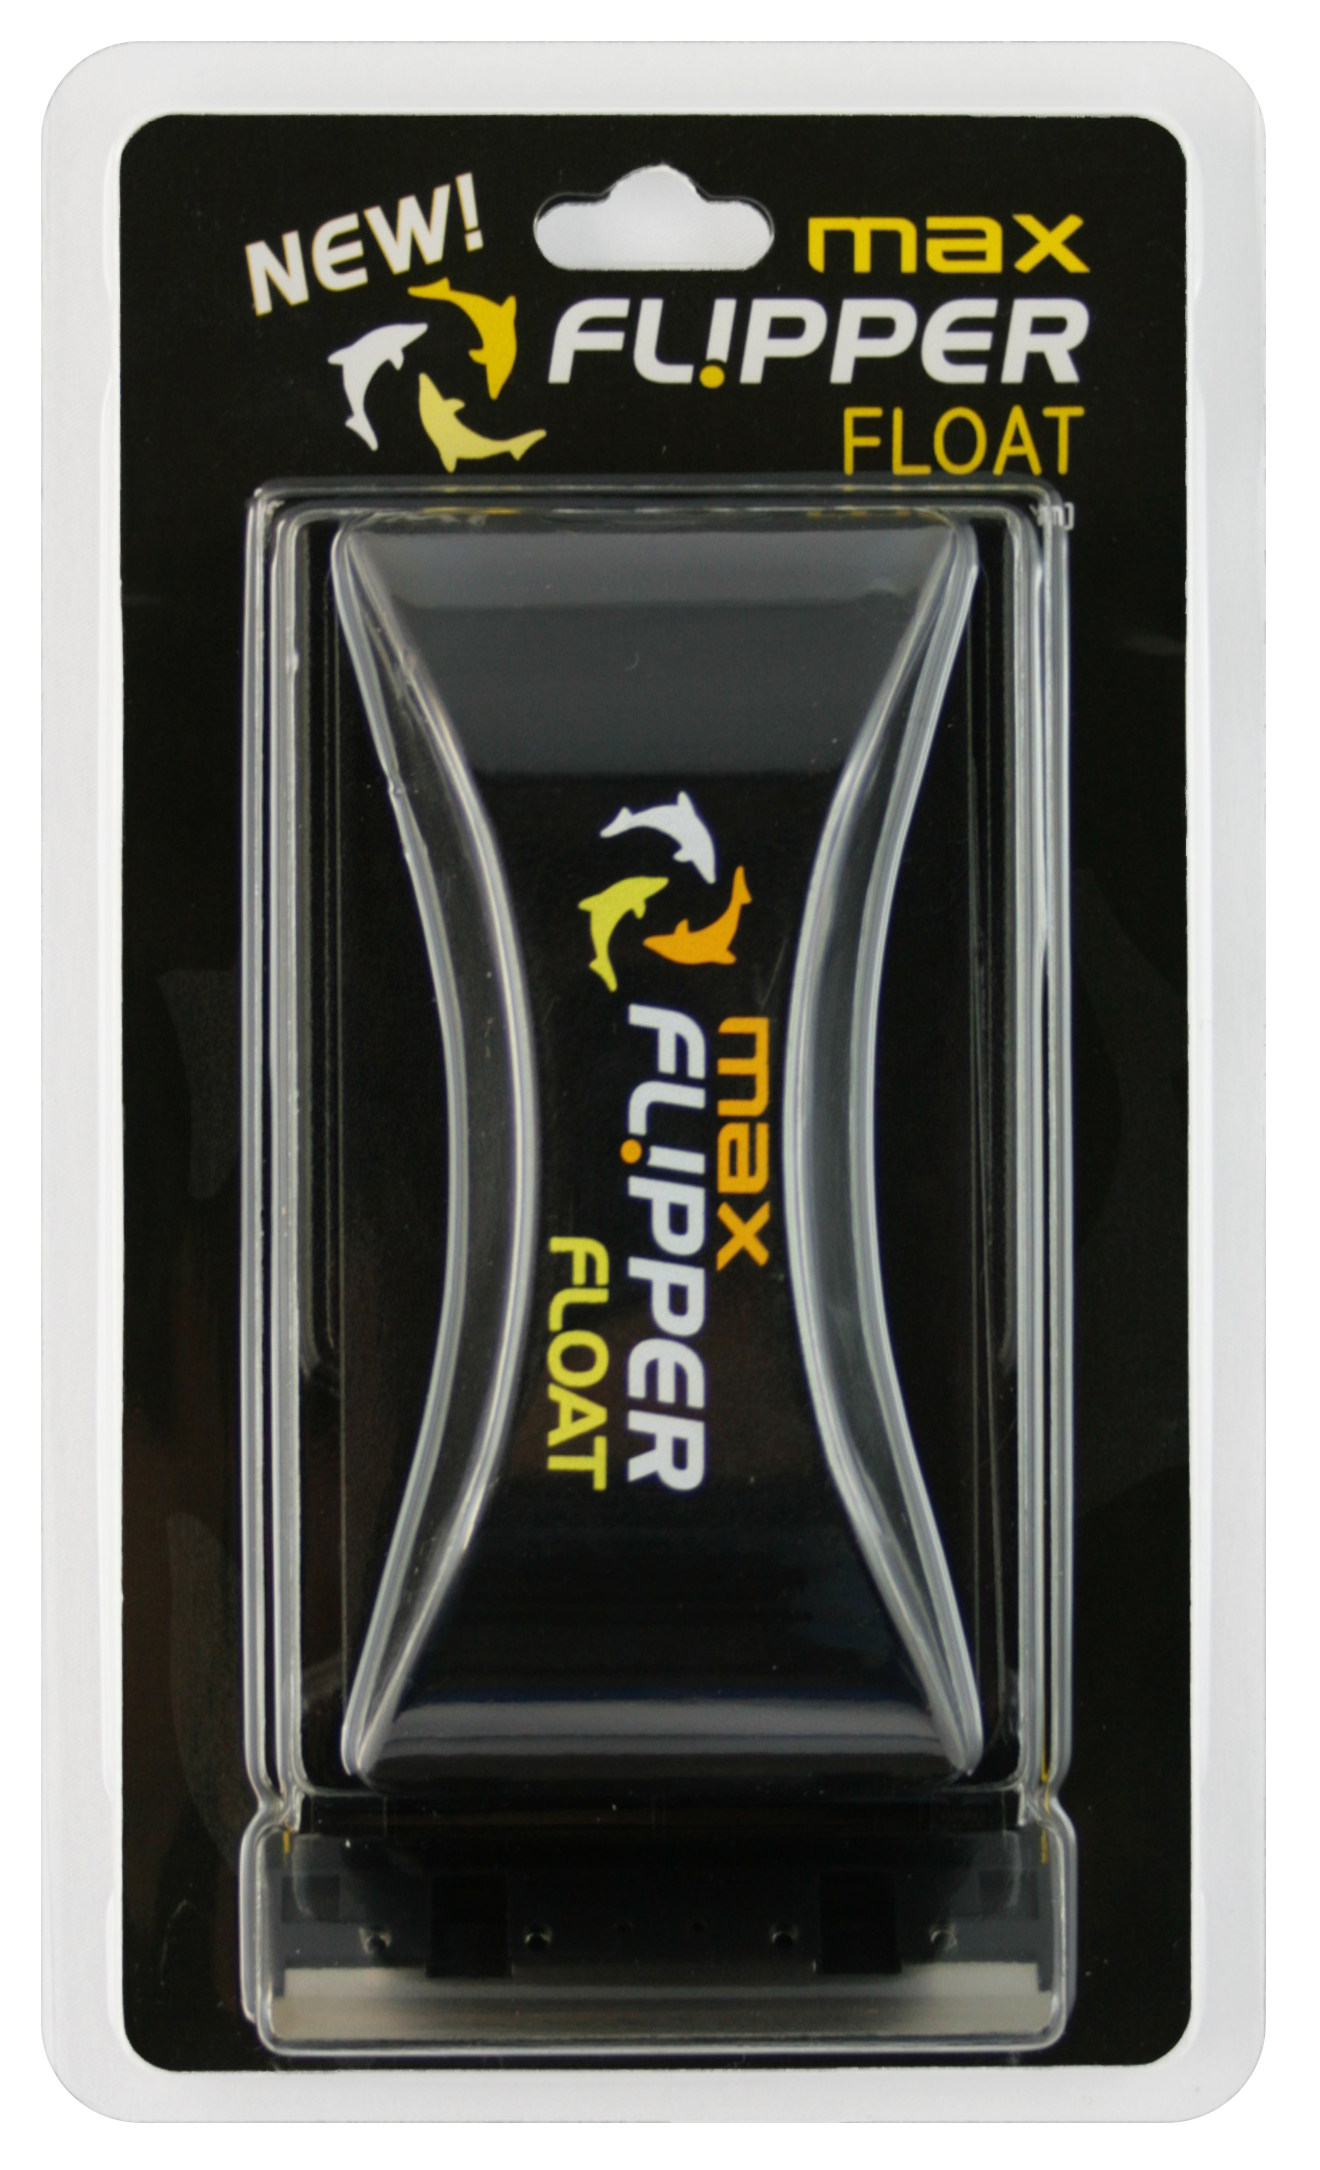 Flipper Max Float czyścik magnetyczny 2w1 pływający do szyb max. 24mm